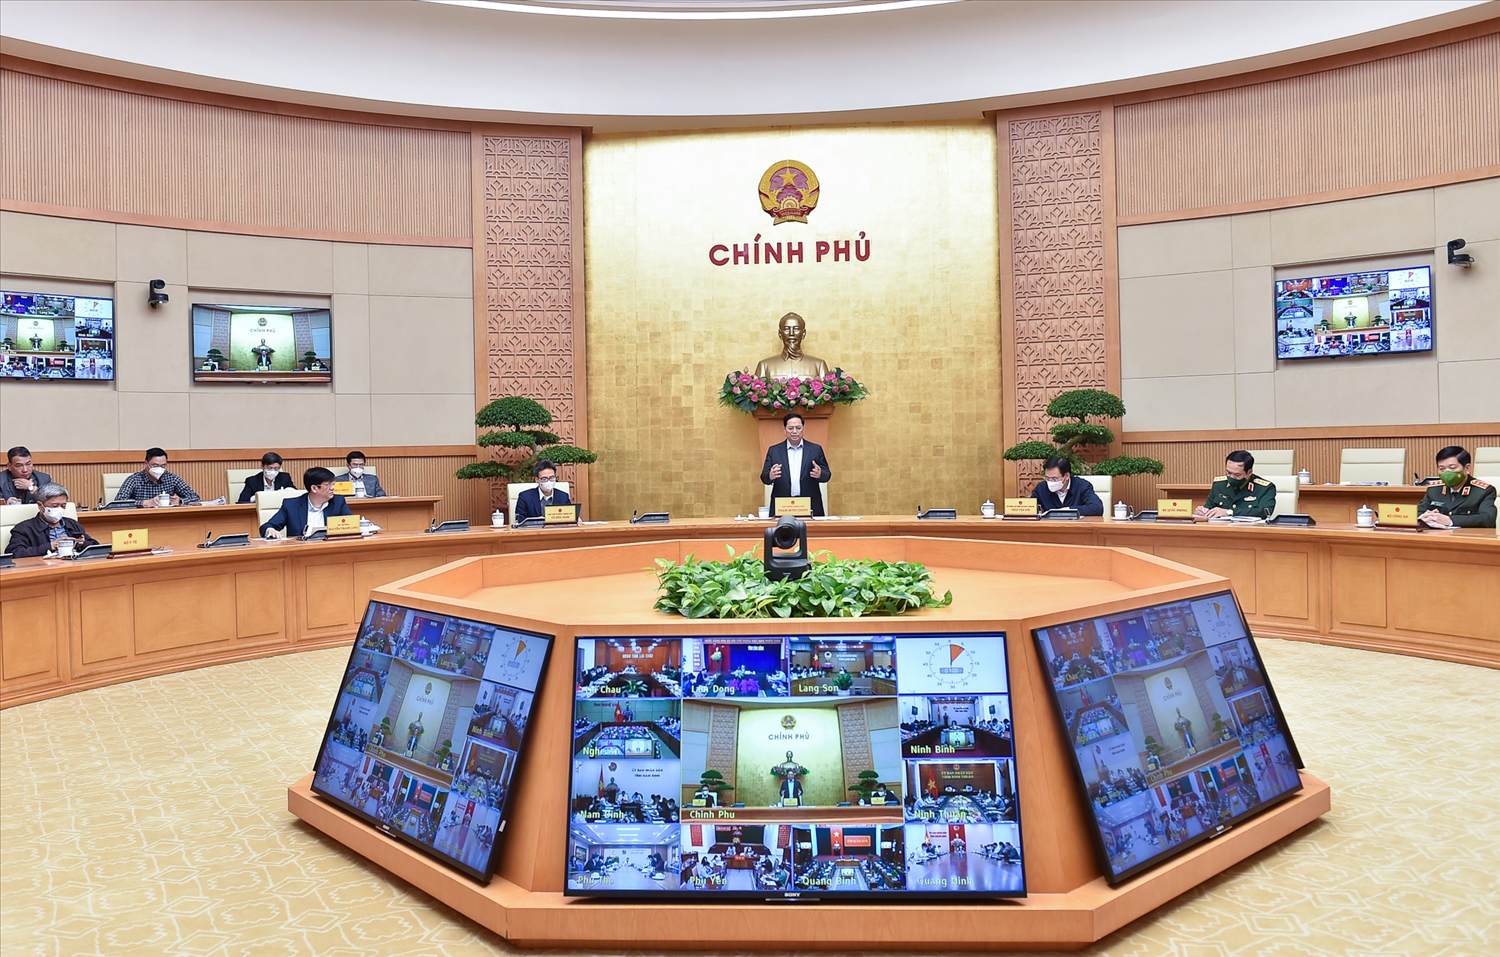 Chiều ngày 16/12, tại trụ sở Chính phủ, Thủ tướng Phạm Minh Chính, Trưởng Ban chỉ đạo quốc gia phòng chống dịch bệnh COVID-19 chủ trì cuộc họp trực tuyến toàn quốc về các giải pháp để triển khai hiệu quả hơn Nghị quyết 128 của Chính phủ. Ảnh: VGP/Nhật Bắc